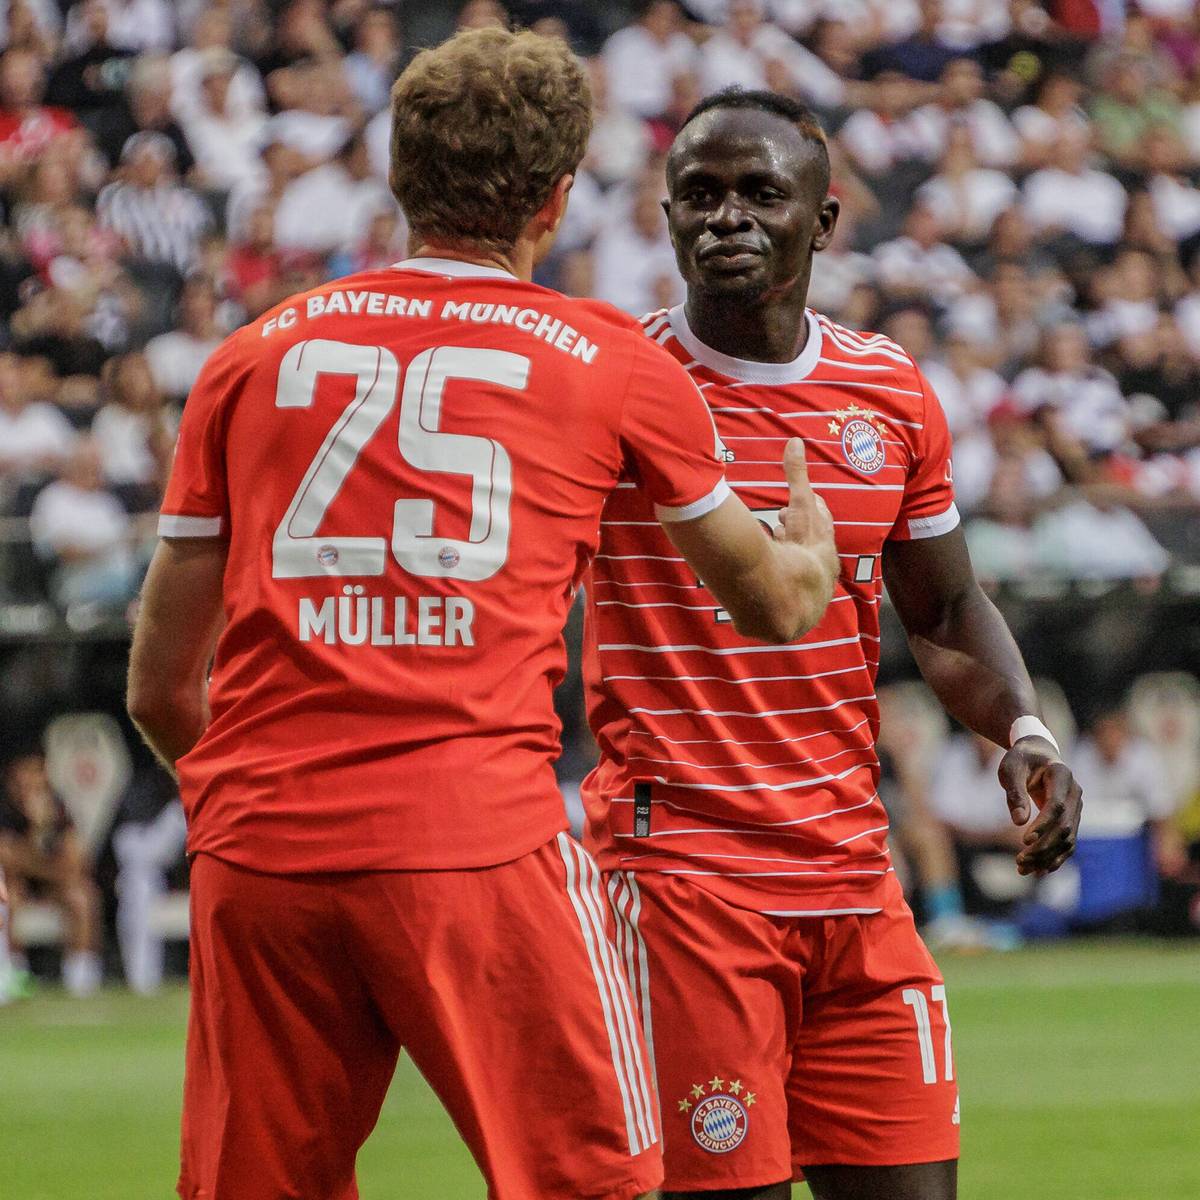 Der Mannschaftsrat des FC Bayern für die Saison 2022/23 steht. Sadio Mané zählt nicht dazu. Für Robert Lewandowski rückt ein Deutscher in den offiziellen Leader-Kreis auf.